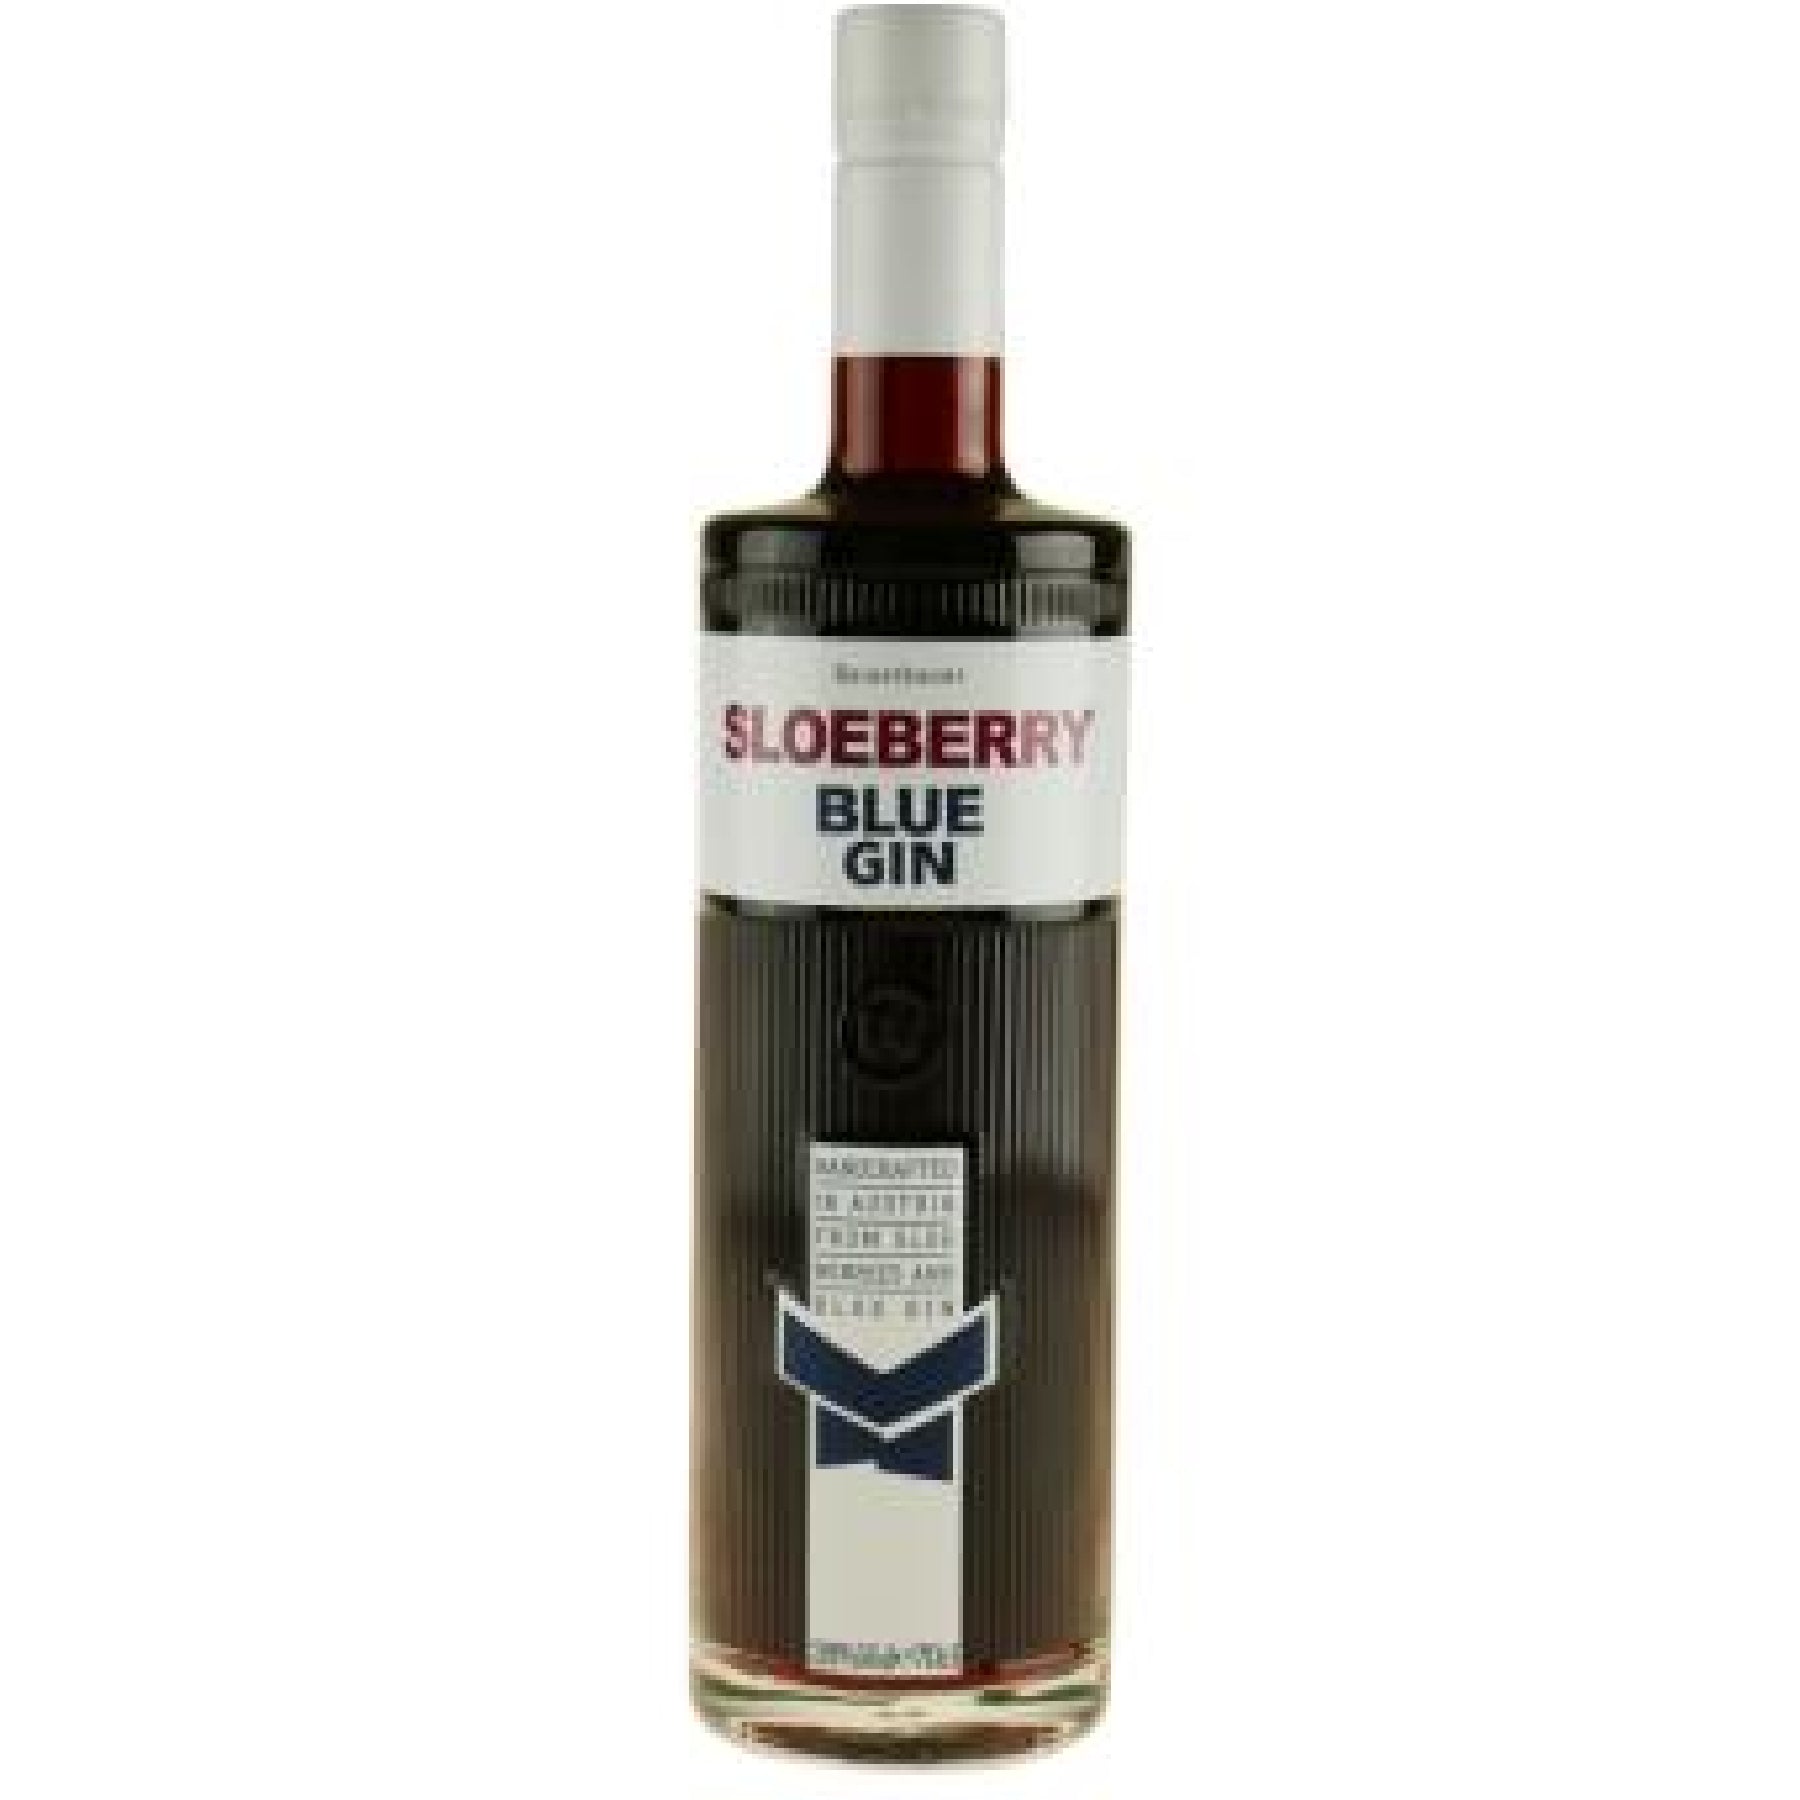 Reisetbauer Sloeberry Blue Gin 70cl